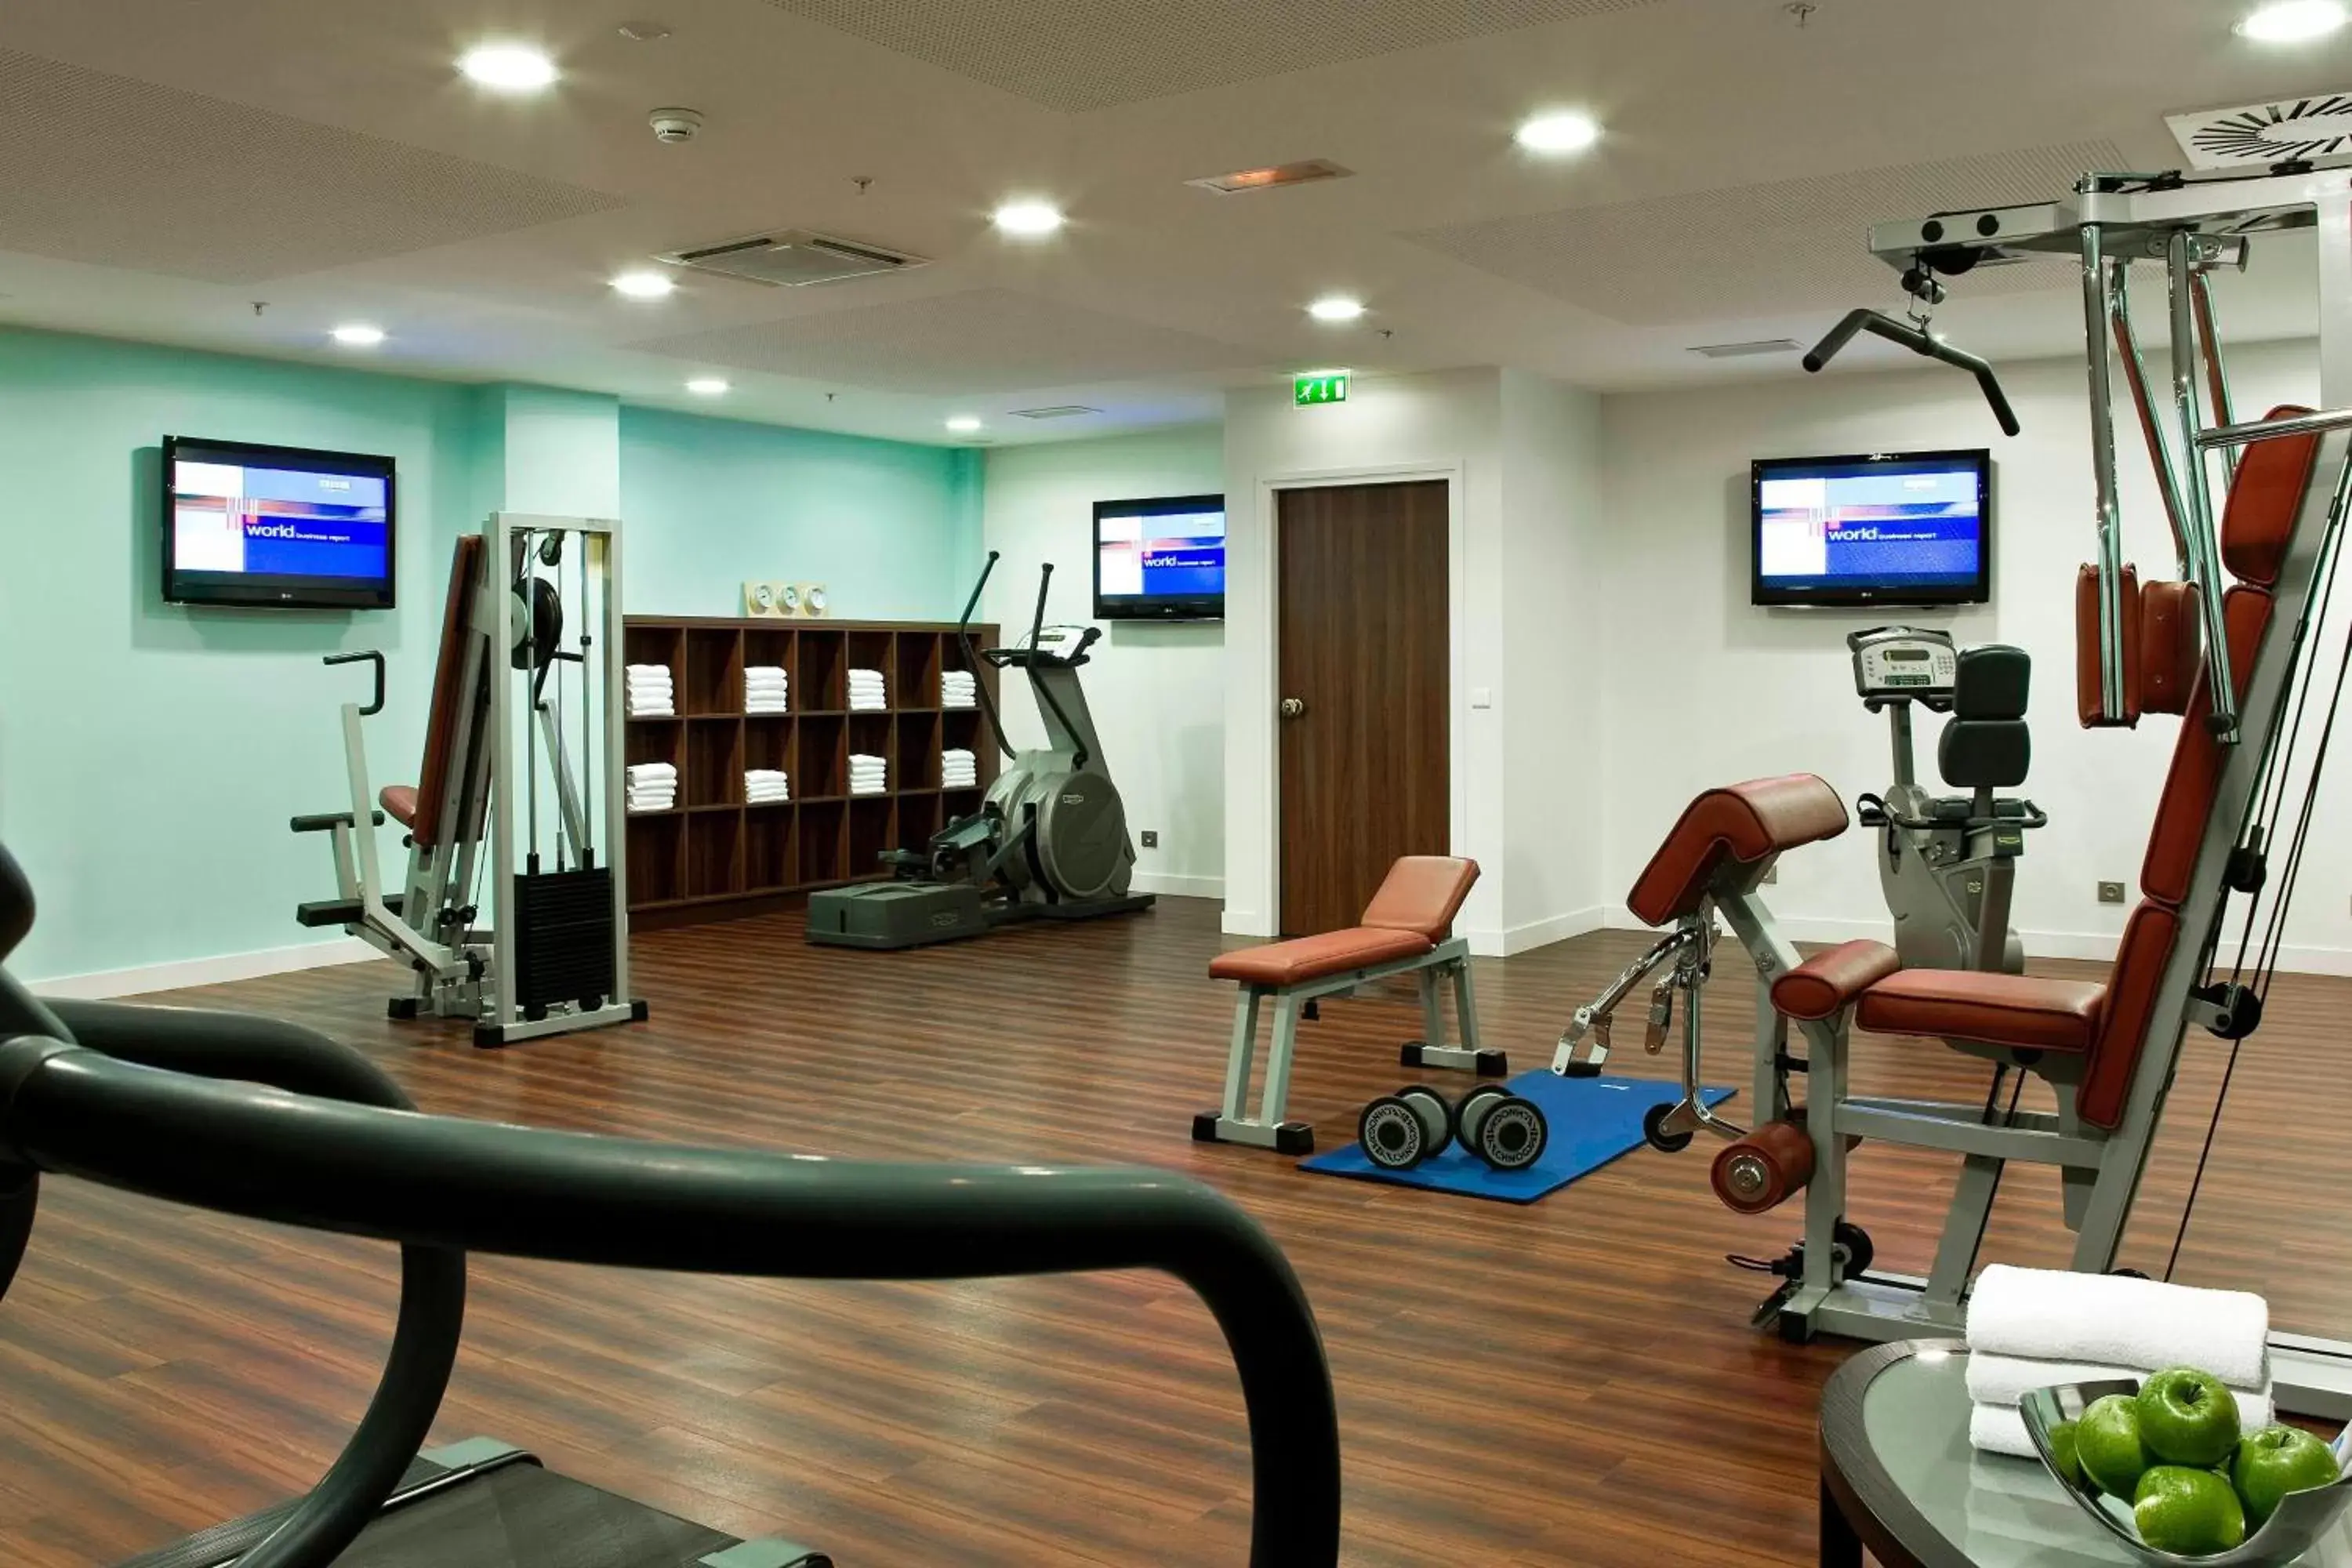 Fitness centre/facilities, Fitness Center/Facilities in Paris Marriott Opera Ambassador Hotel